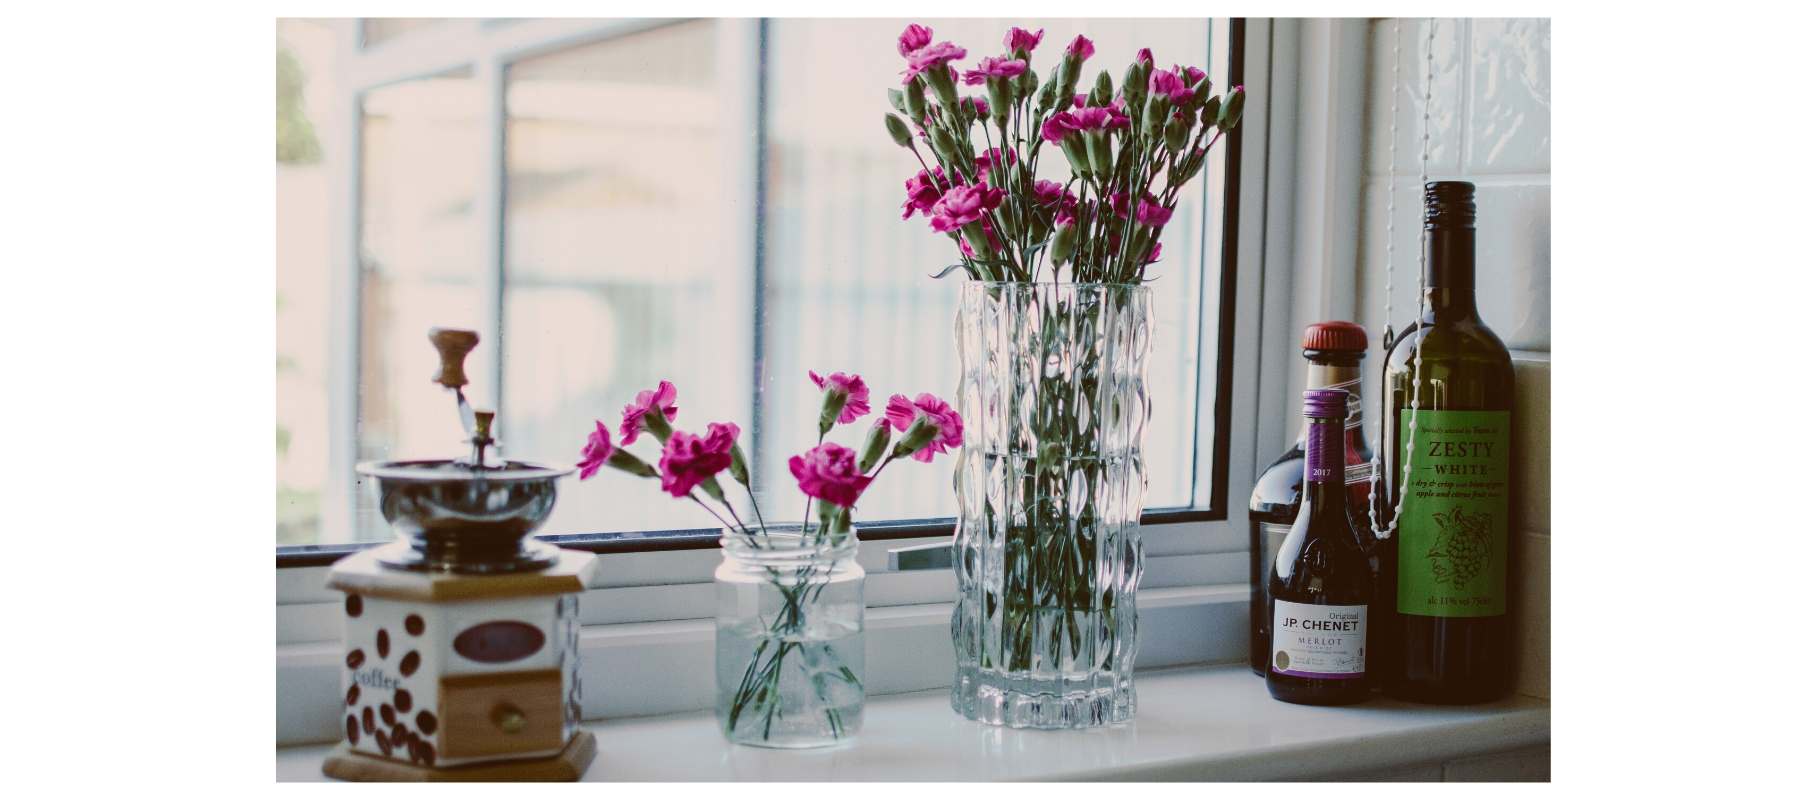 Pink flowers in glass jar on window sill